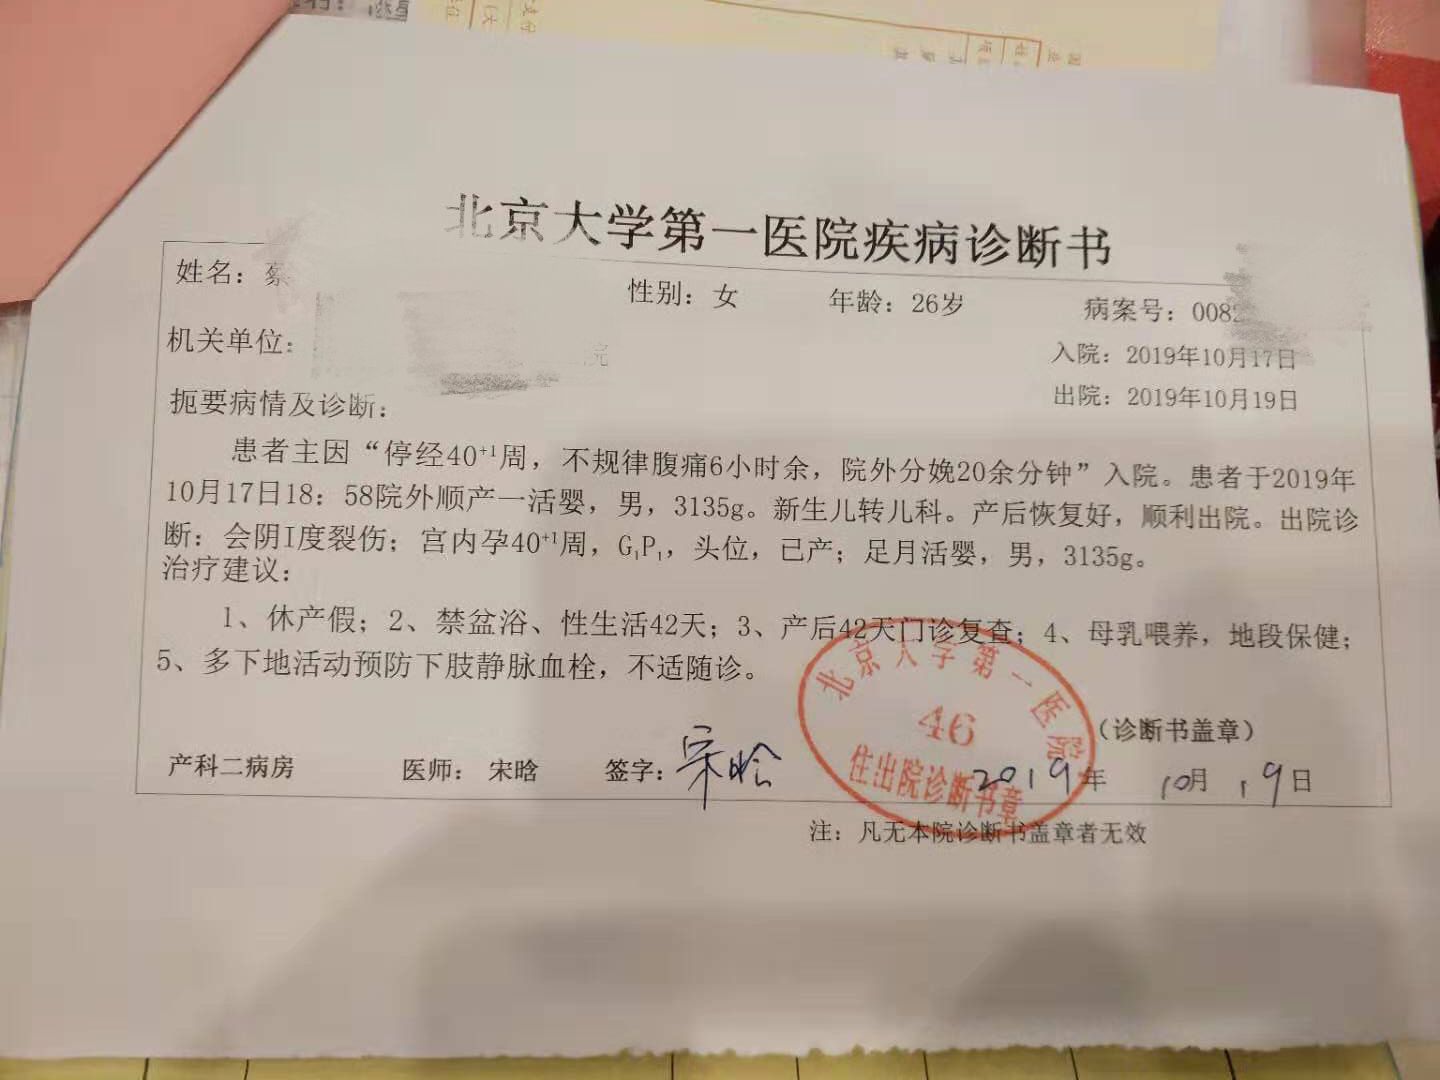 临产,建档医院未收   据曹琳的爱人陈先生讲,妻子的预产期在10月16日